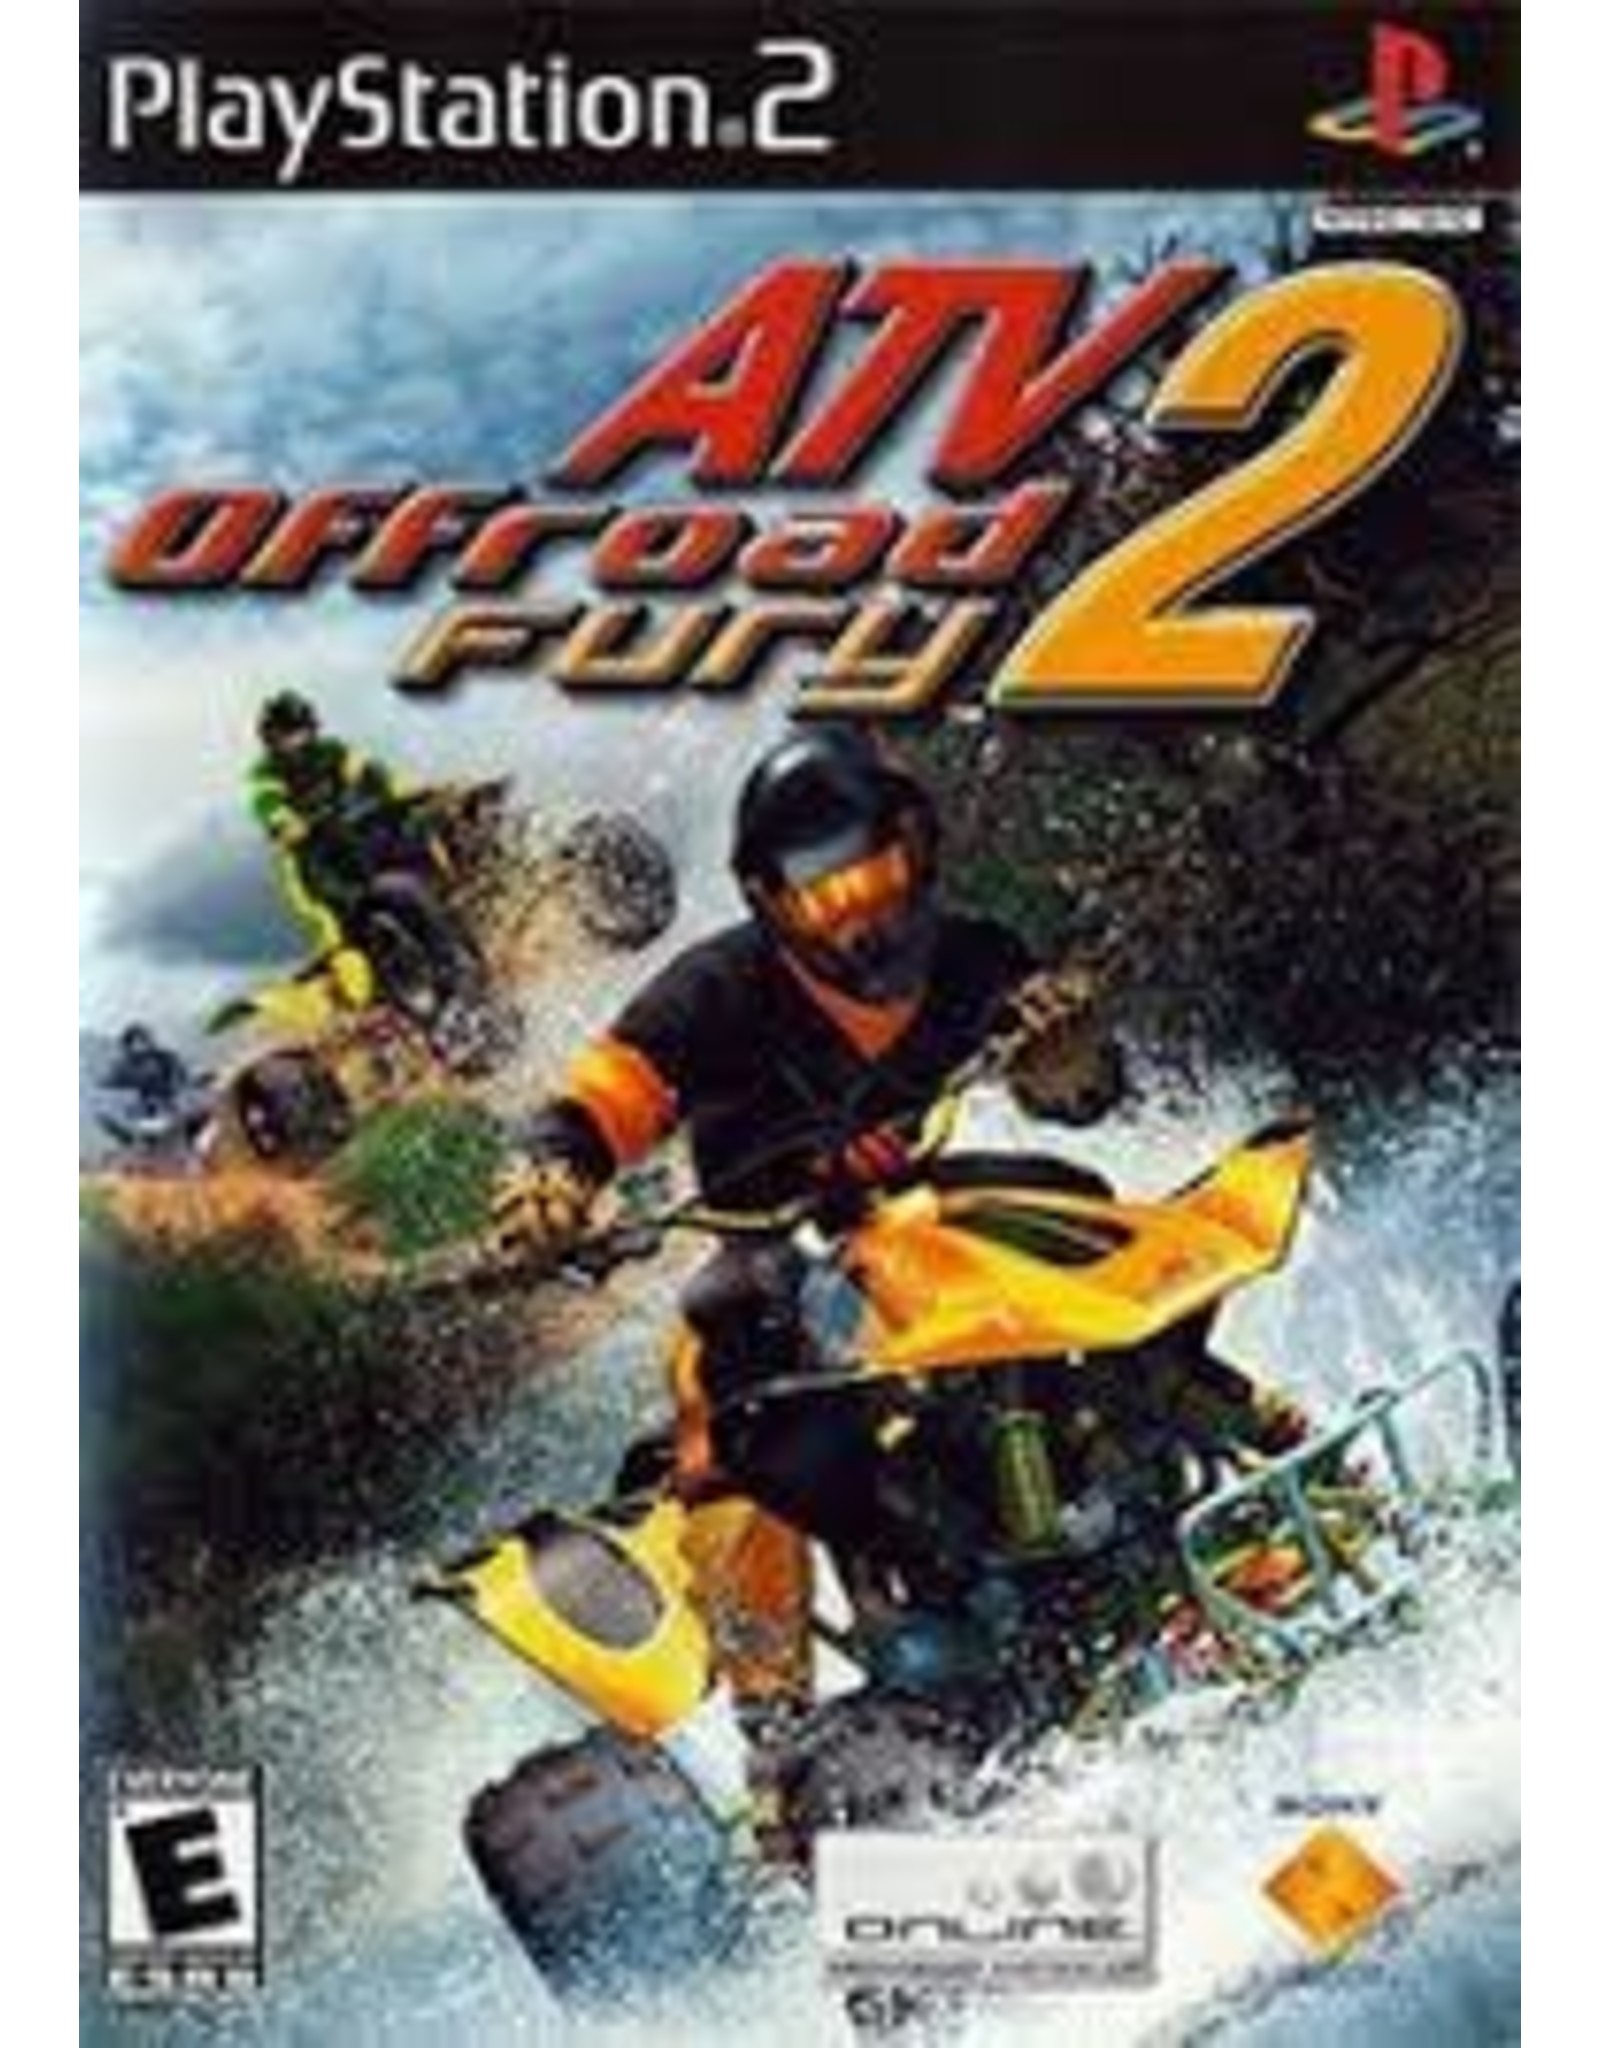 Playstation 2 ATV Offroad Fury 2 (No Manual)